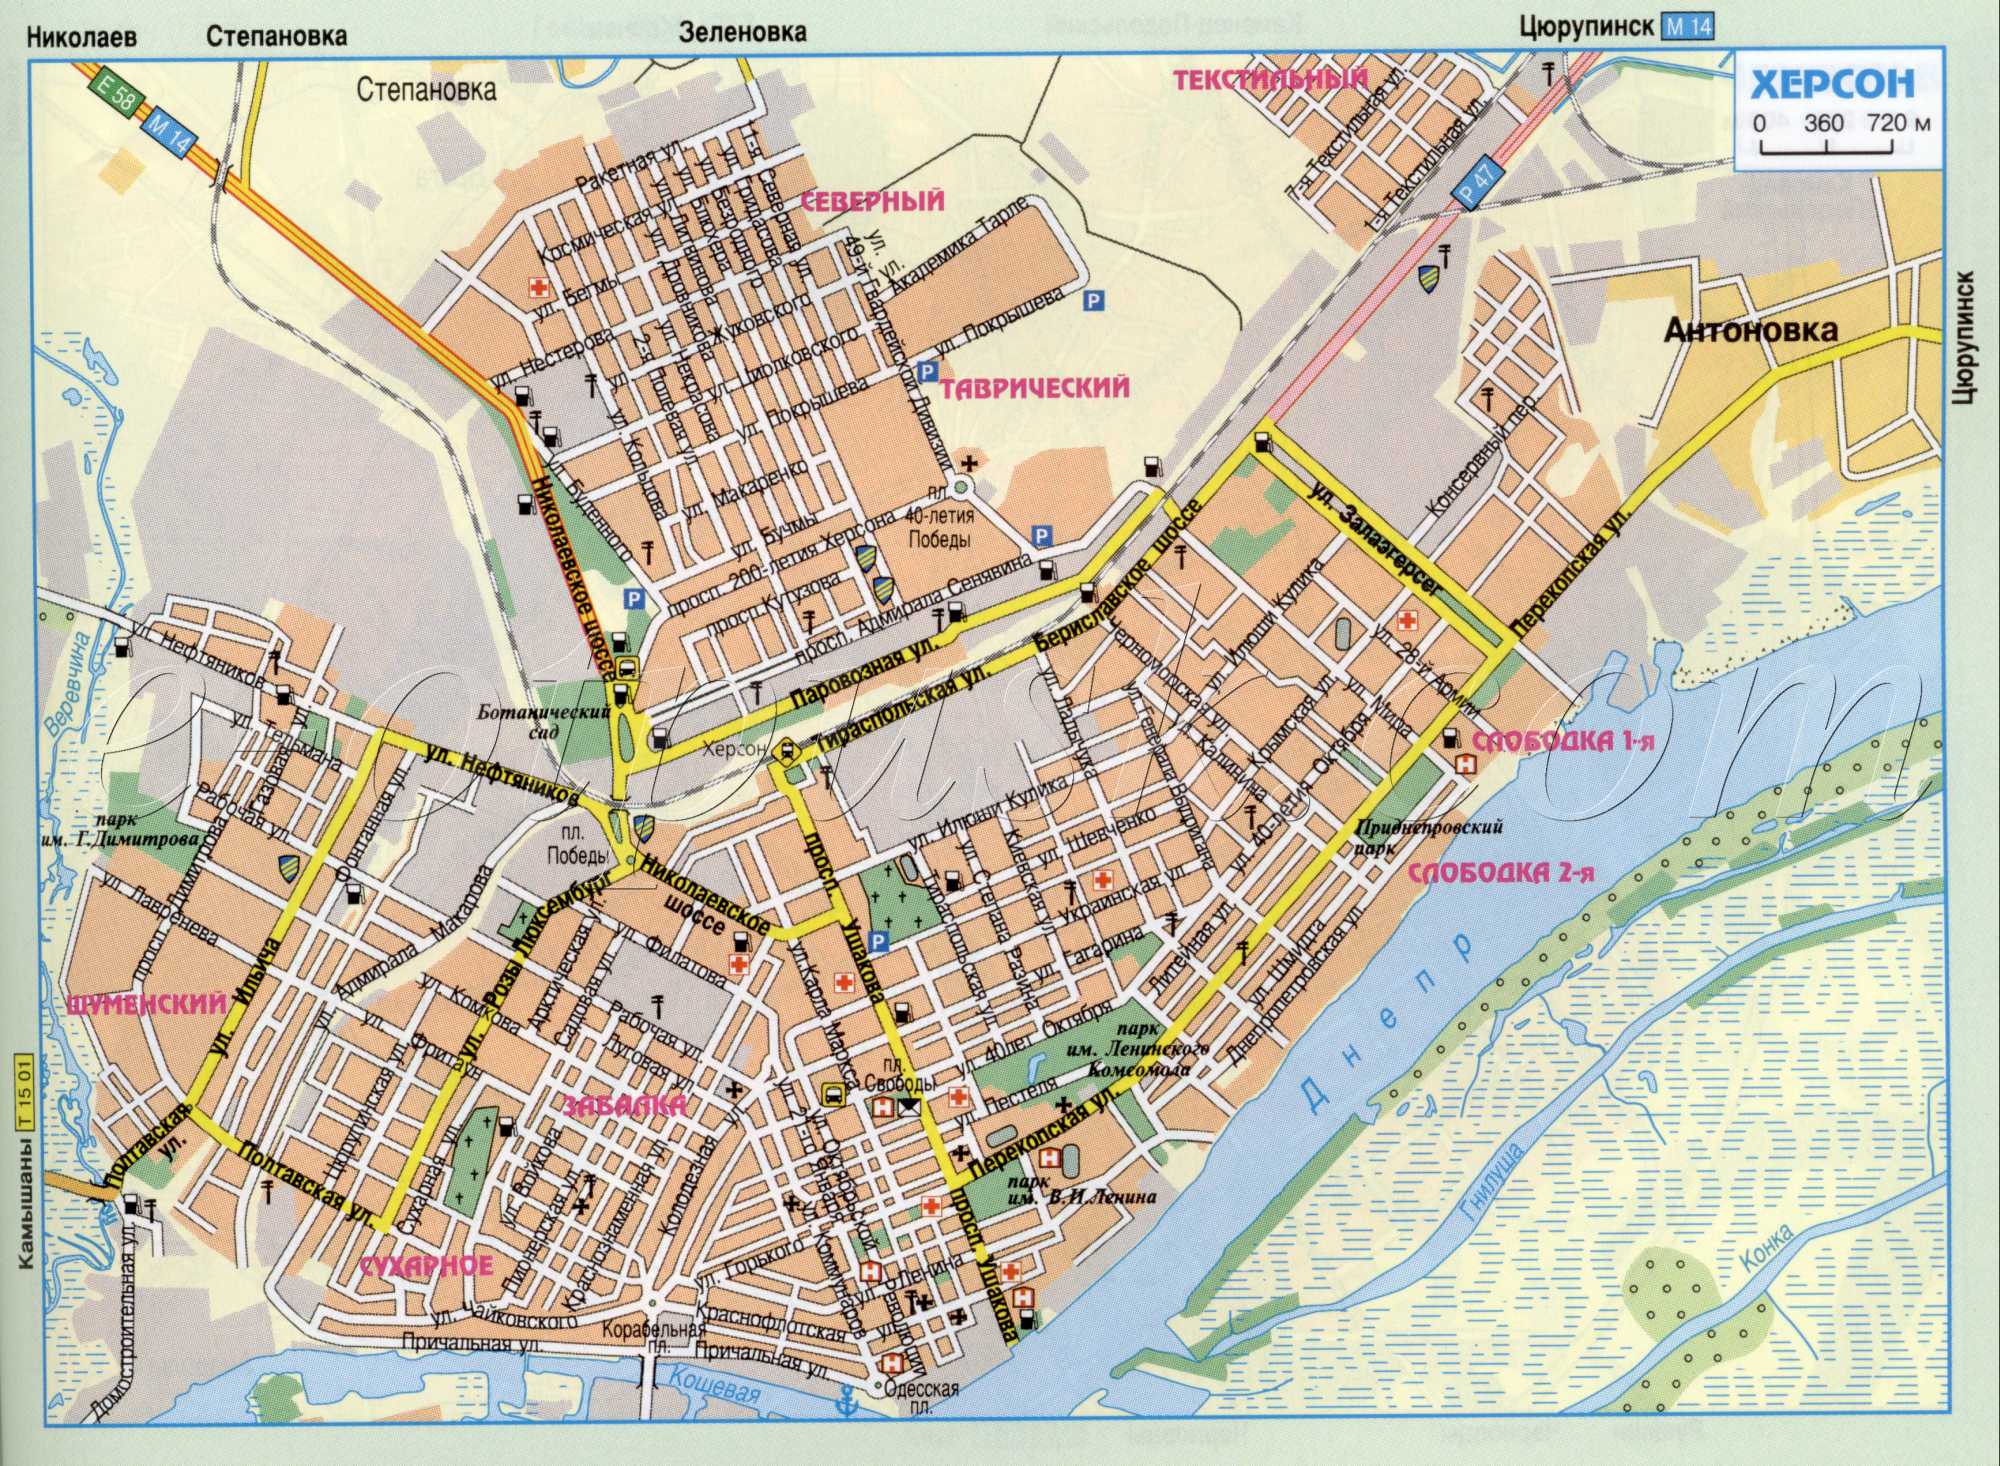 Карта Херсона автомобильная (Украина карта г. Херсон). Скачать бесплатно подробную карту автомобильных дорог